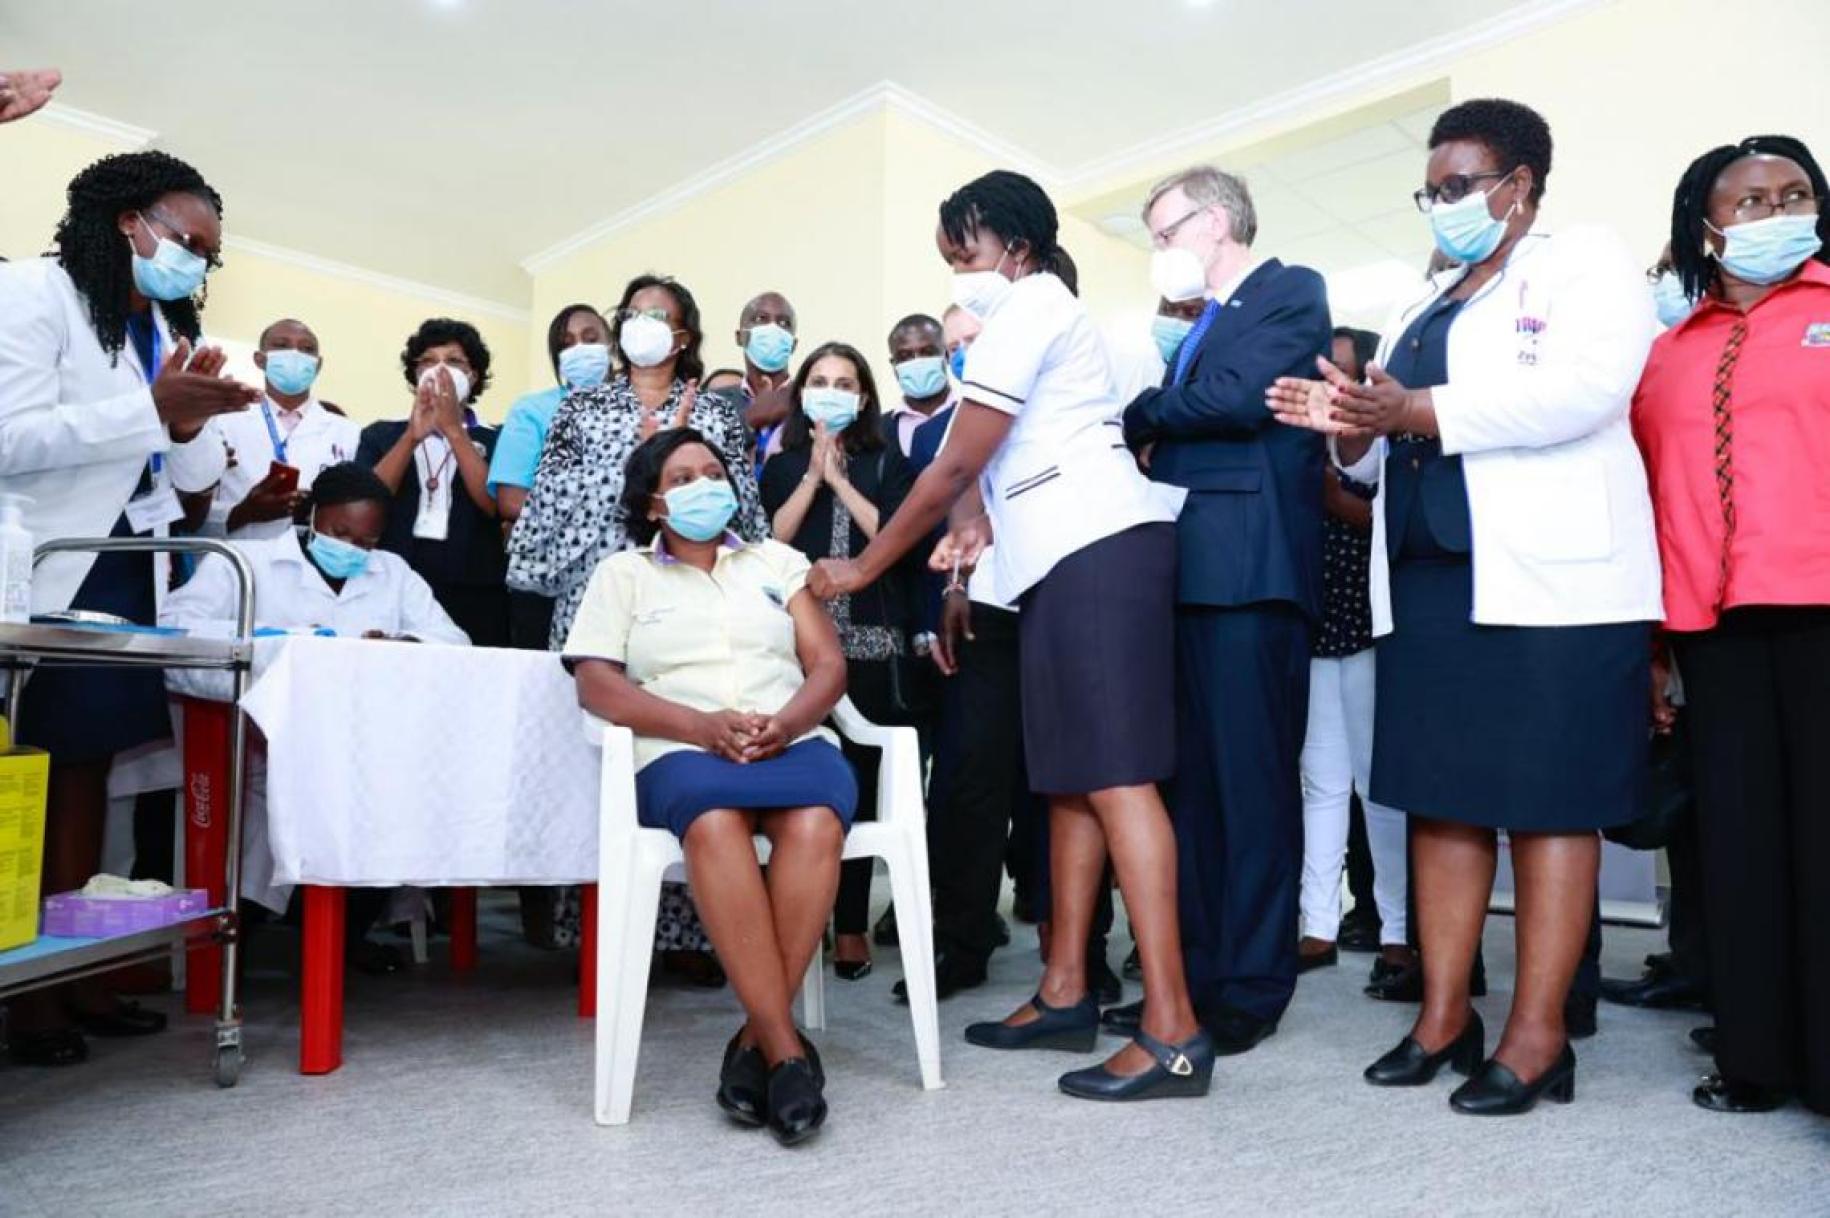 Un gran grupo de personas con máscaras se para alrededor de una mujer sentada que se vacuna.